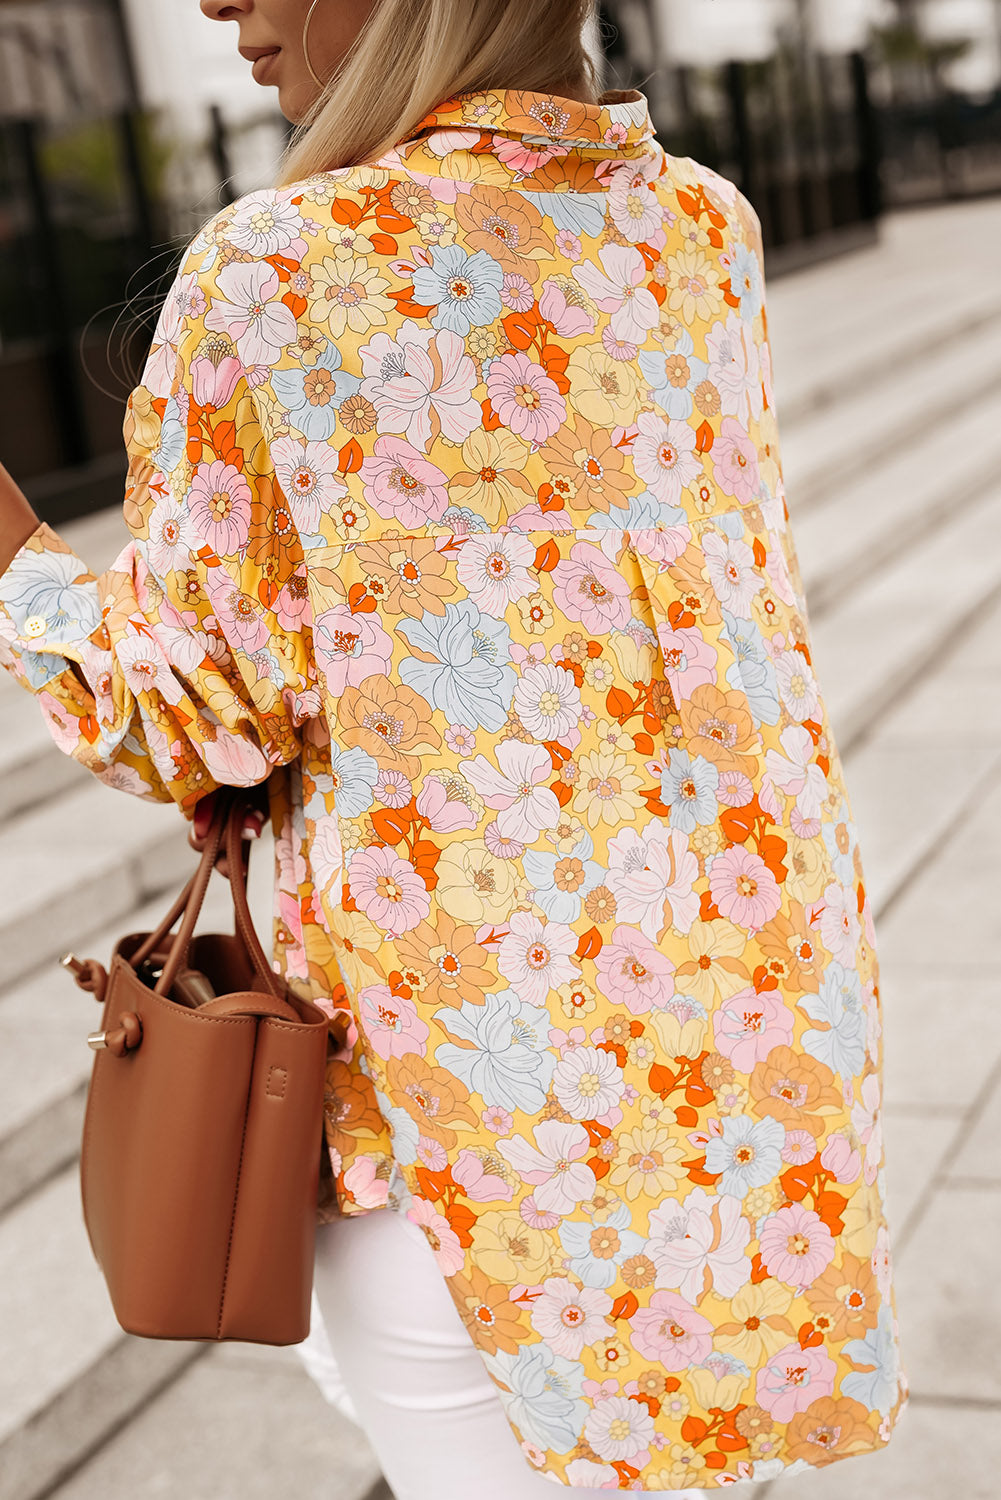 Rumena ohlapna srajca z zavihanim ovratnikom s cvetličnim vzorcem